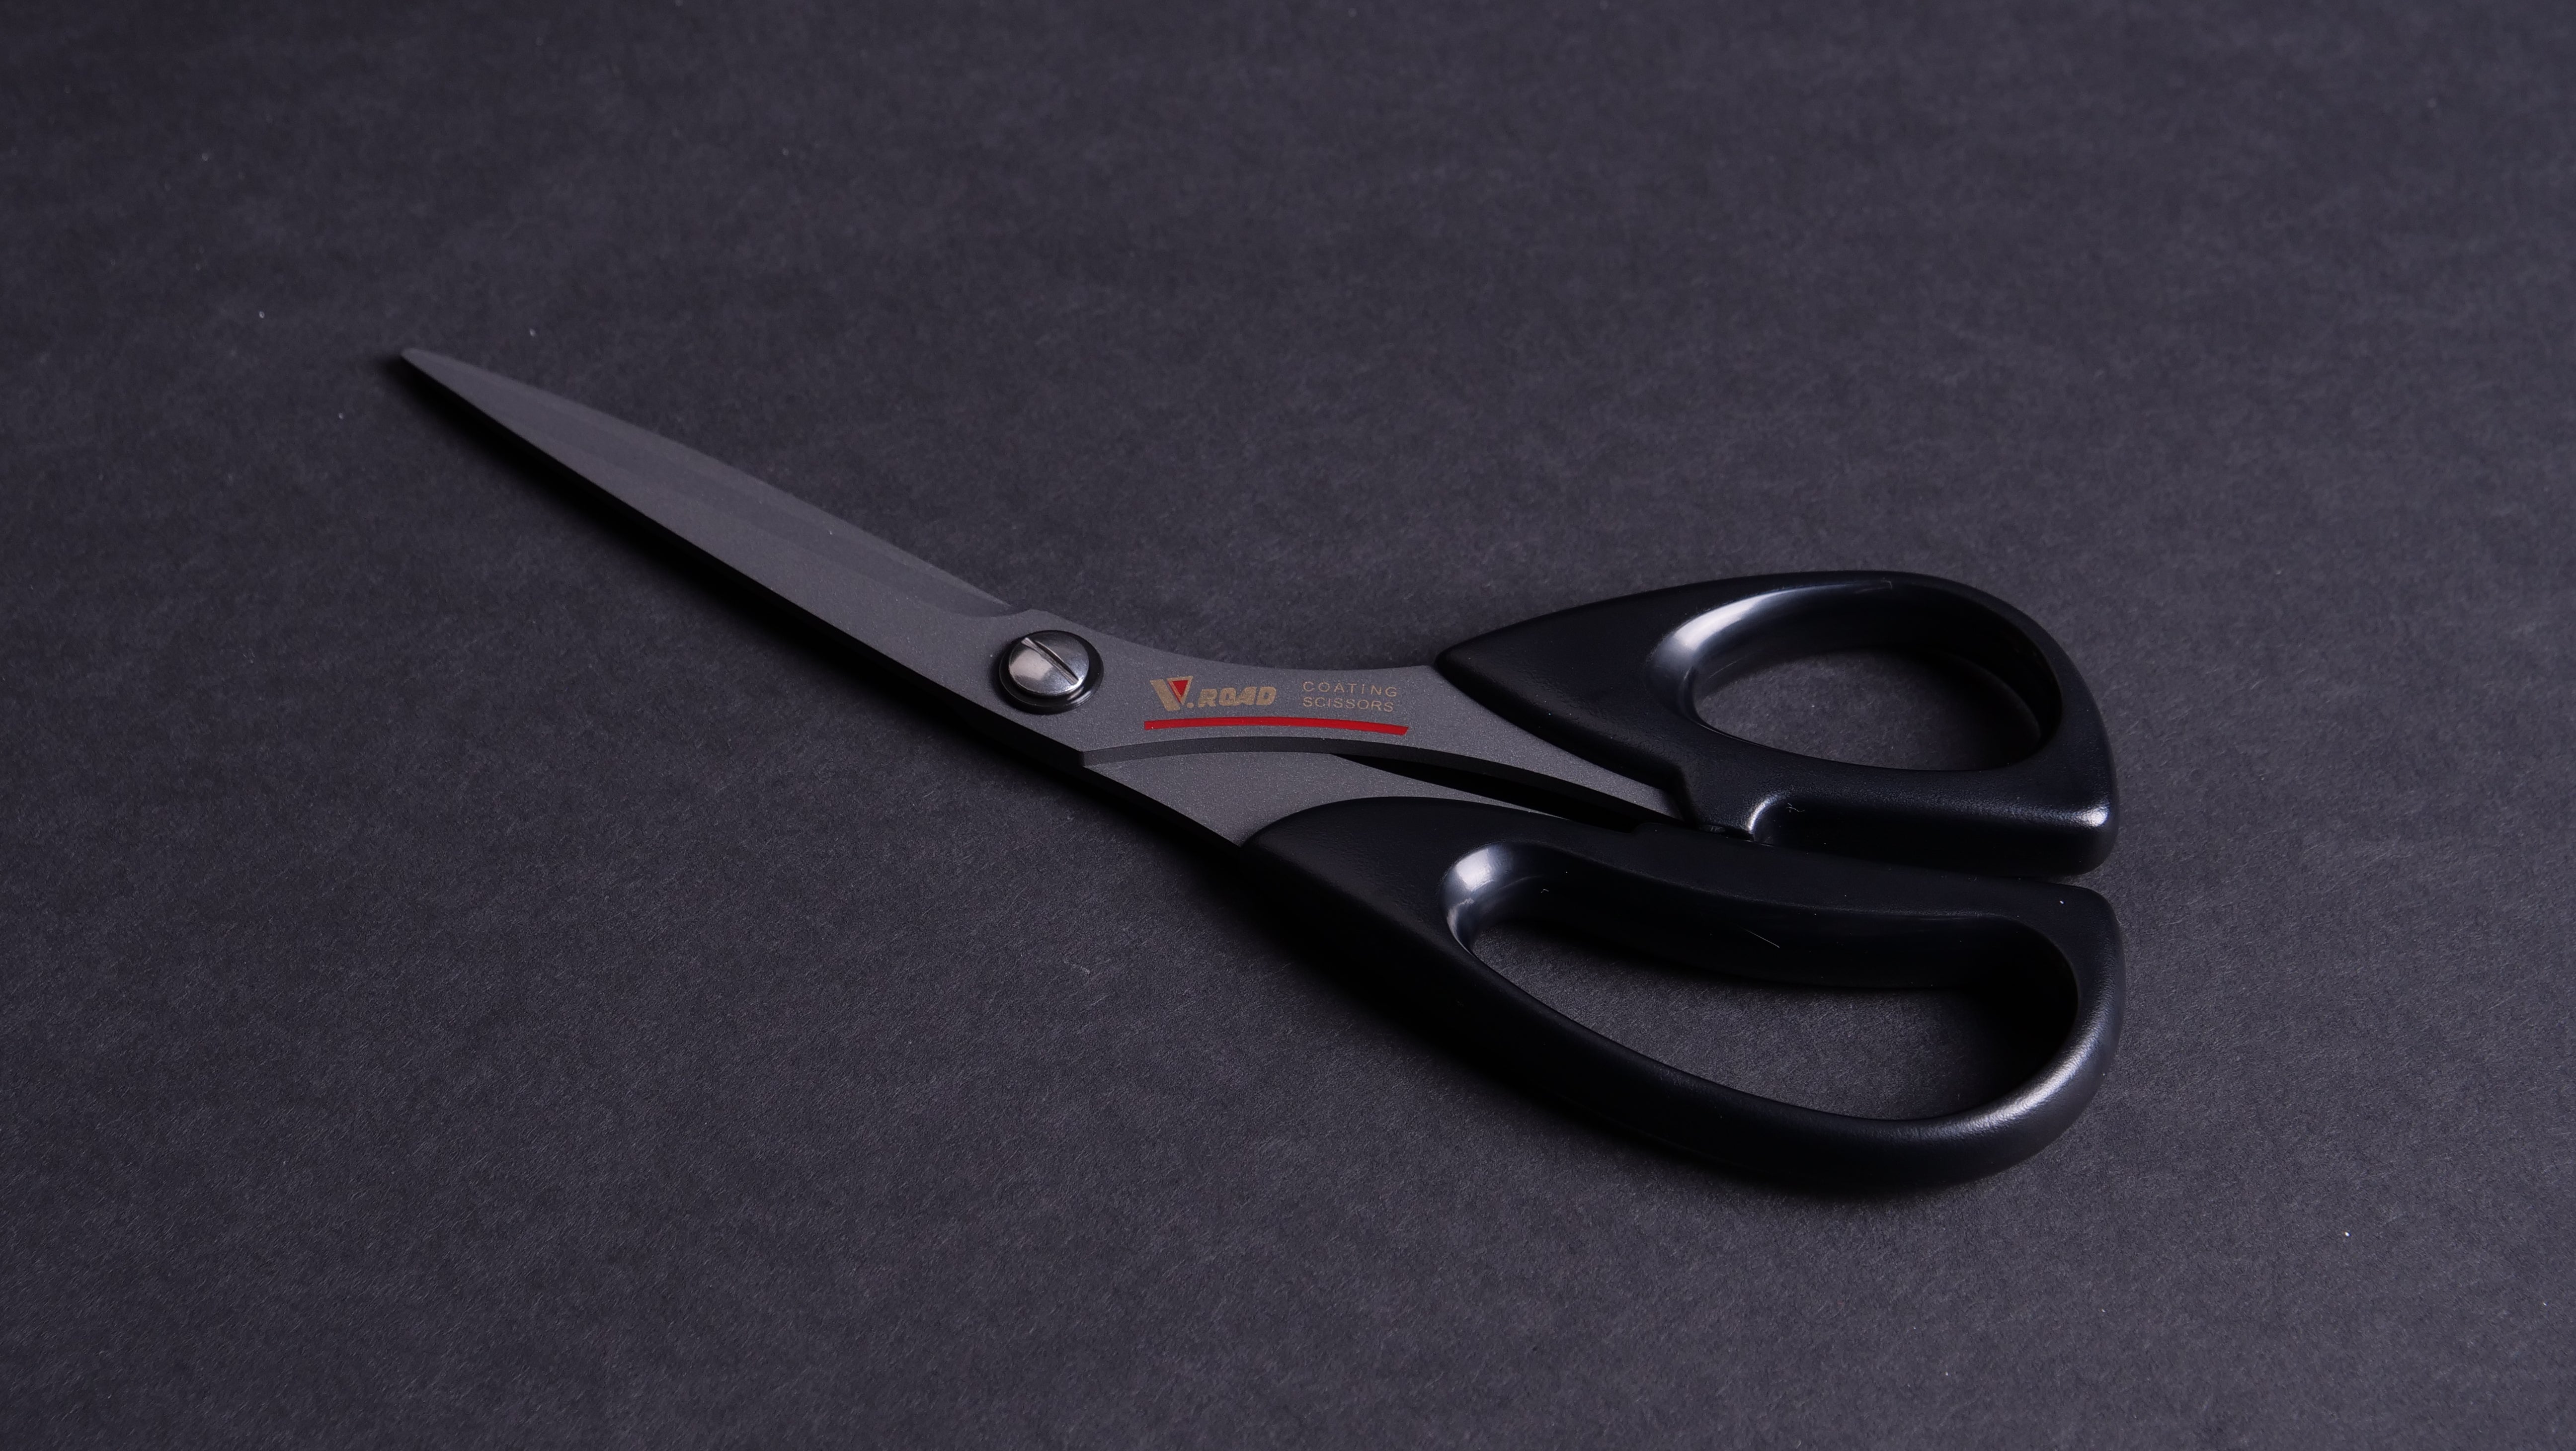 V.Road Sewing Scissors RM-215F